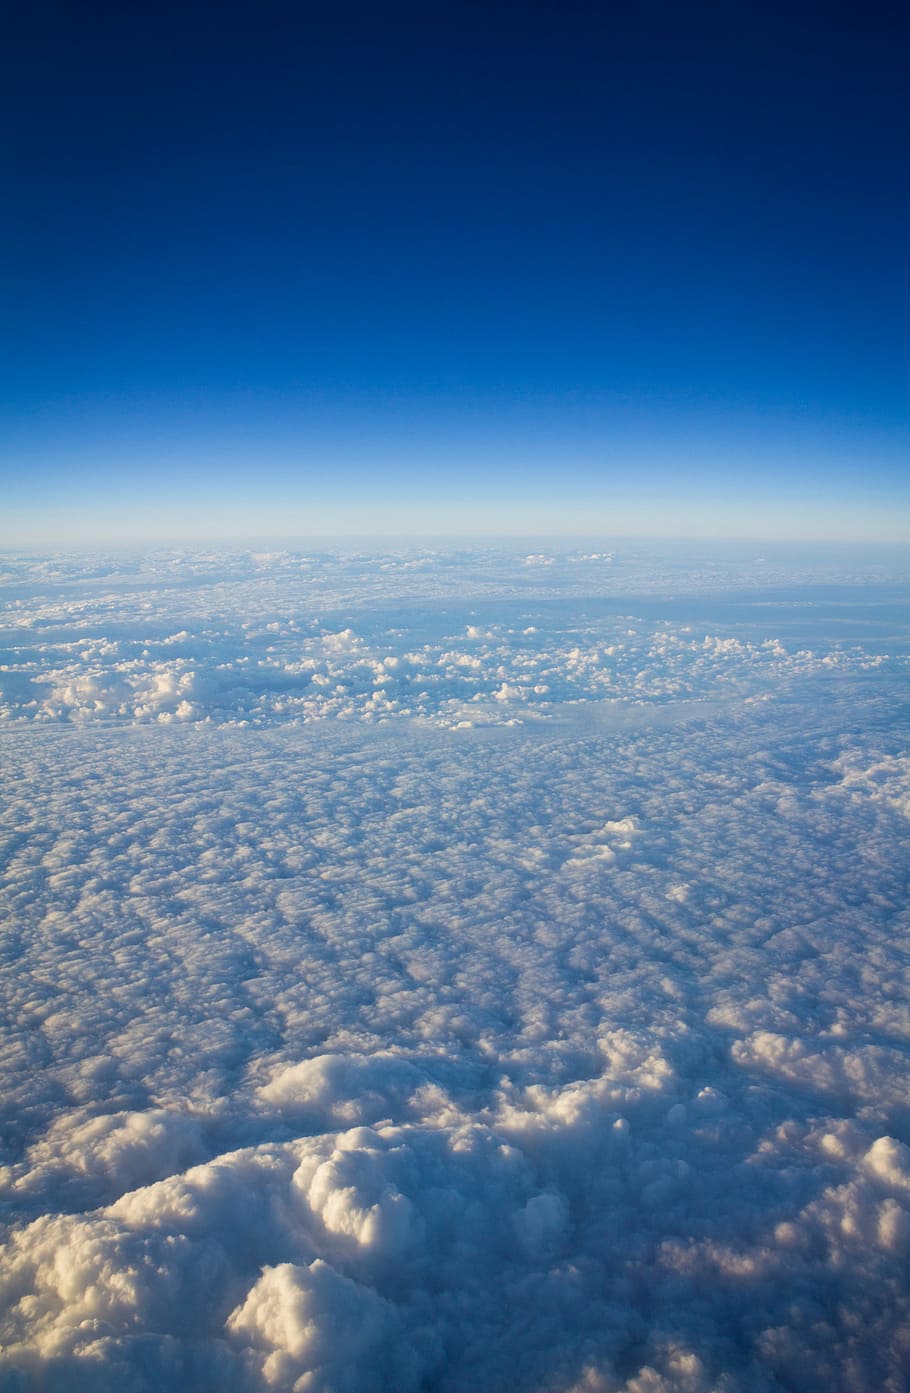 mar, nuvens, durante o dia, nublado, céu, acima das nuvens, nuvem - céu, azul, vista aérea, paisagem